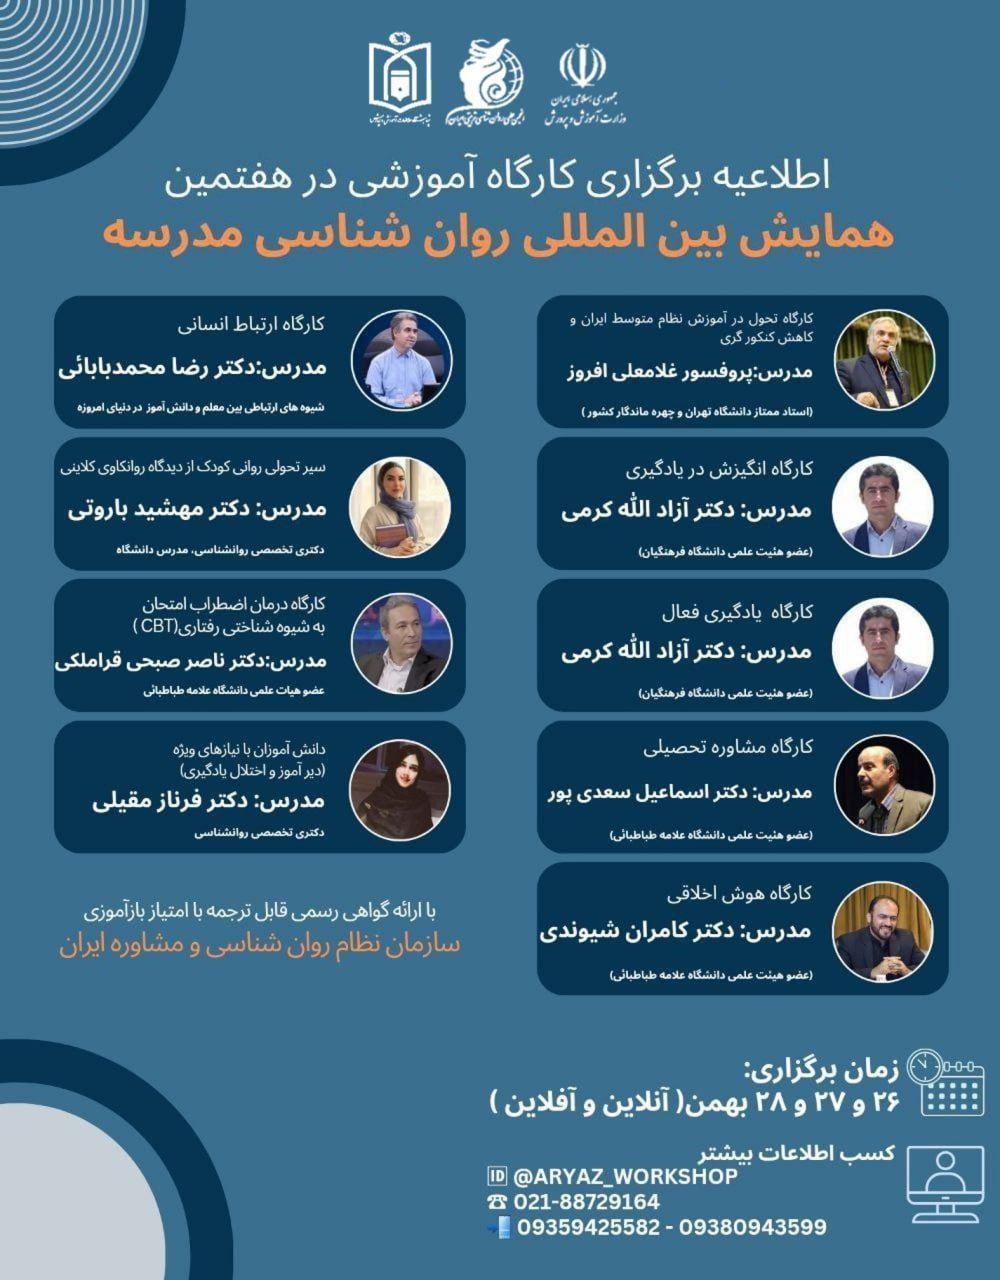 پوستر کارگاه های کانال انجمن روانشناسی تربیتی ایران